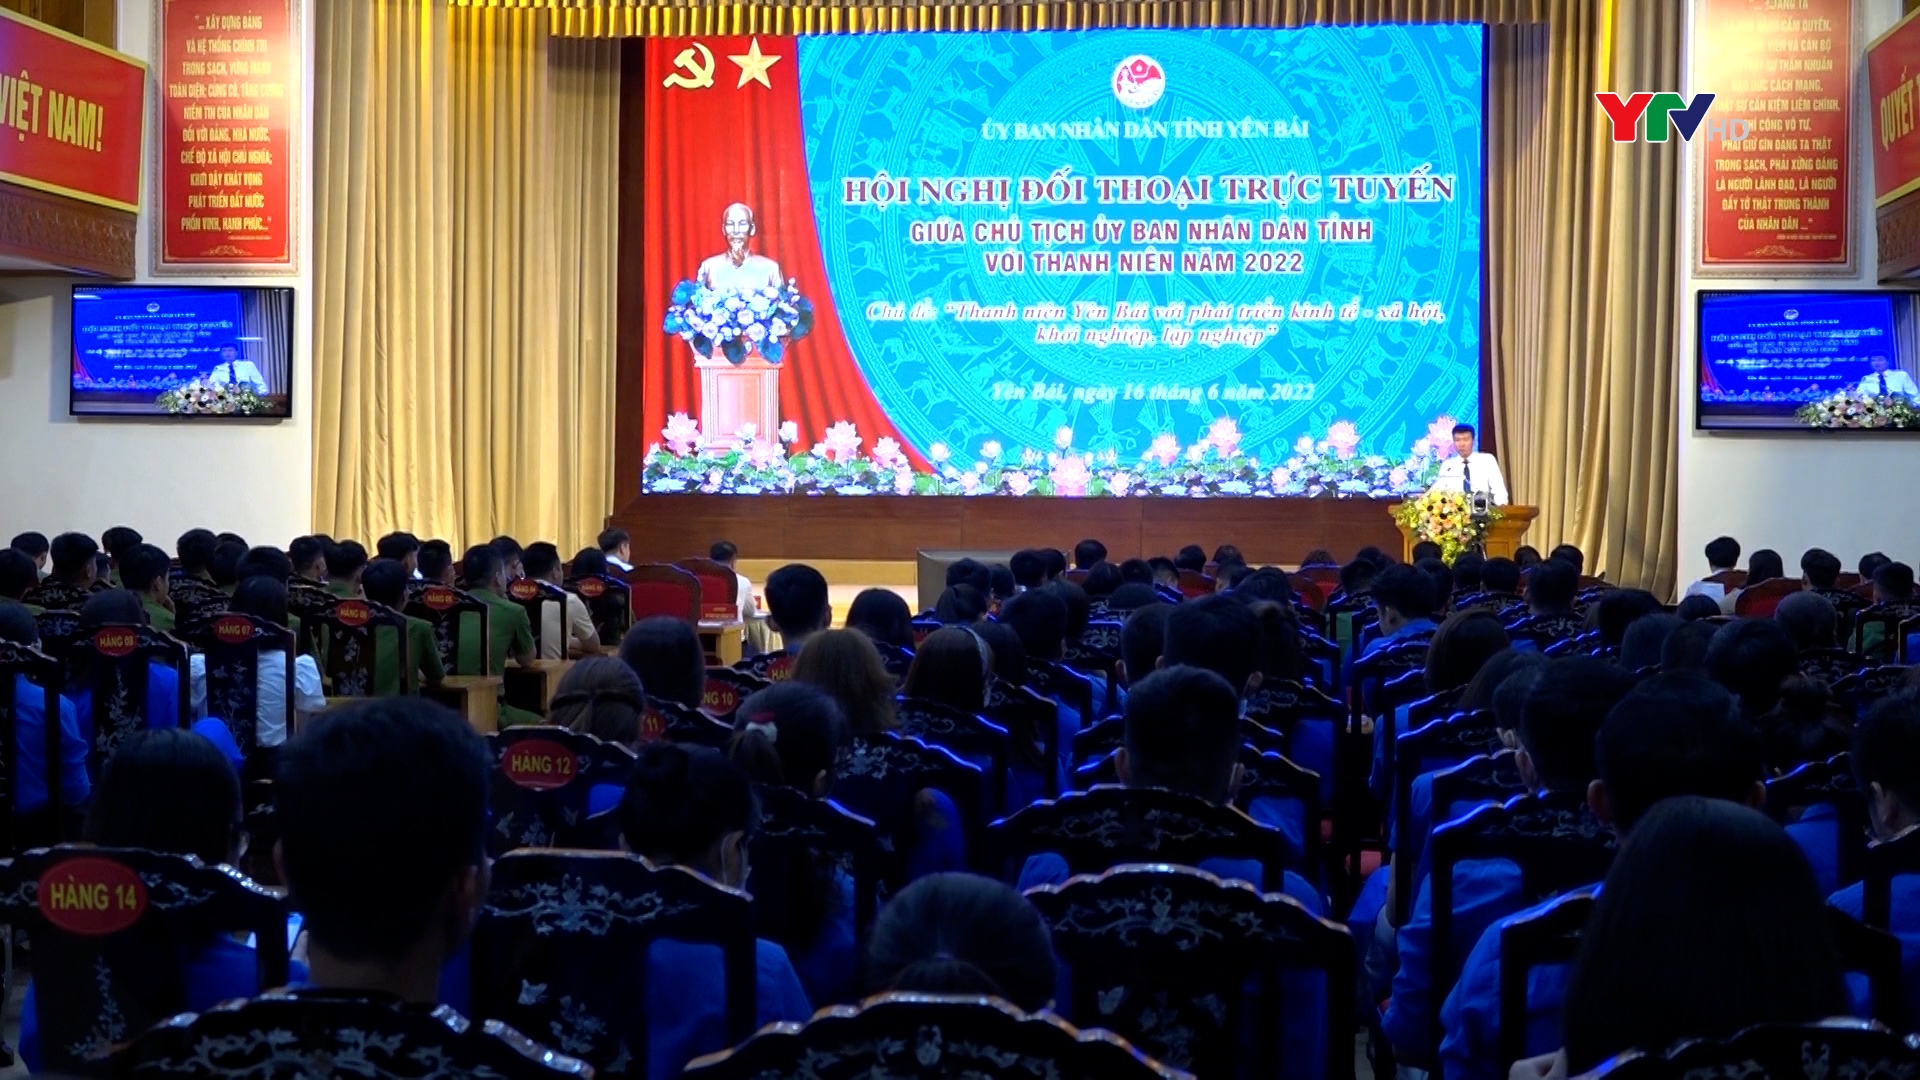 Hội nghị đối thoại trực tuyến giữa Chủ tịch UBND tỉnh với thanh niên năm 2022